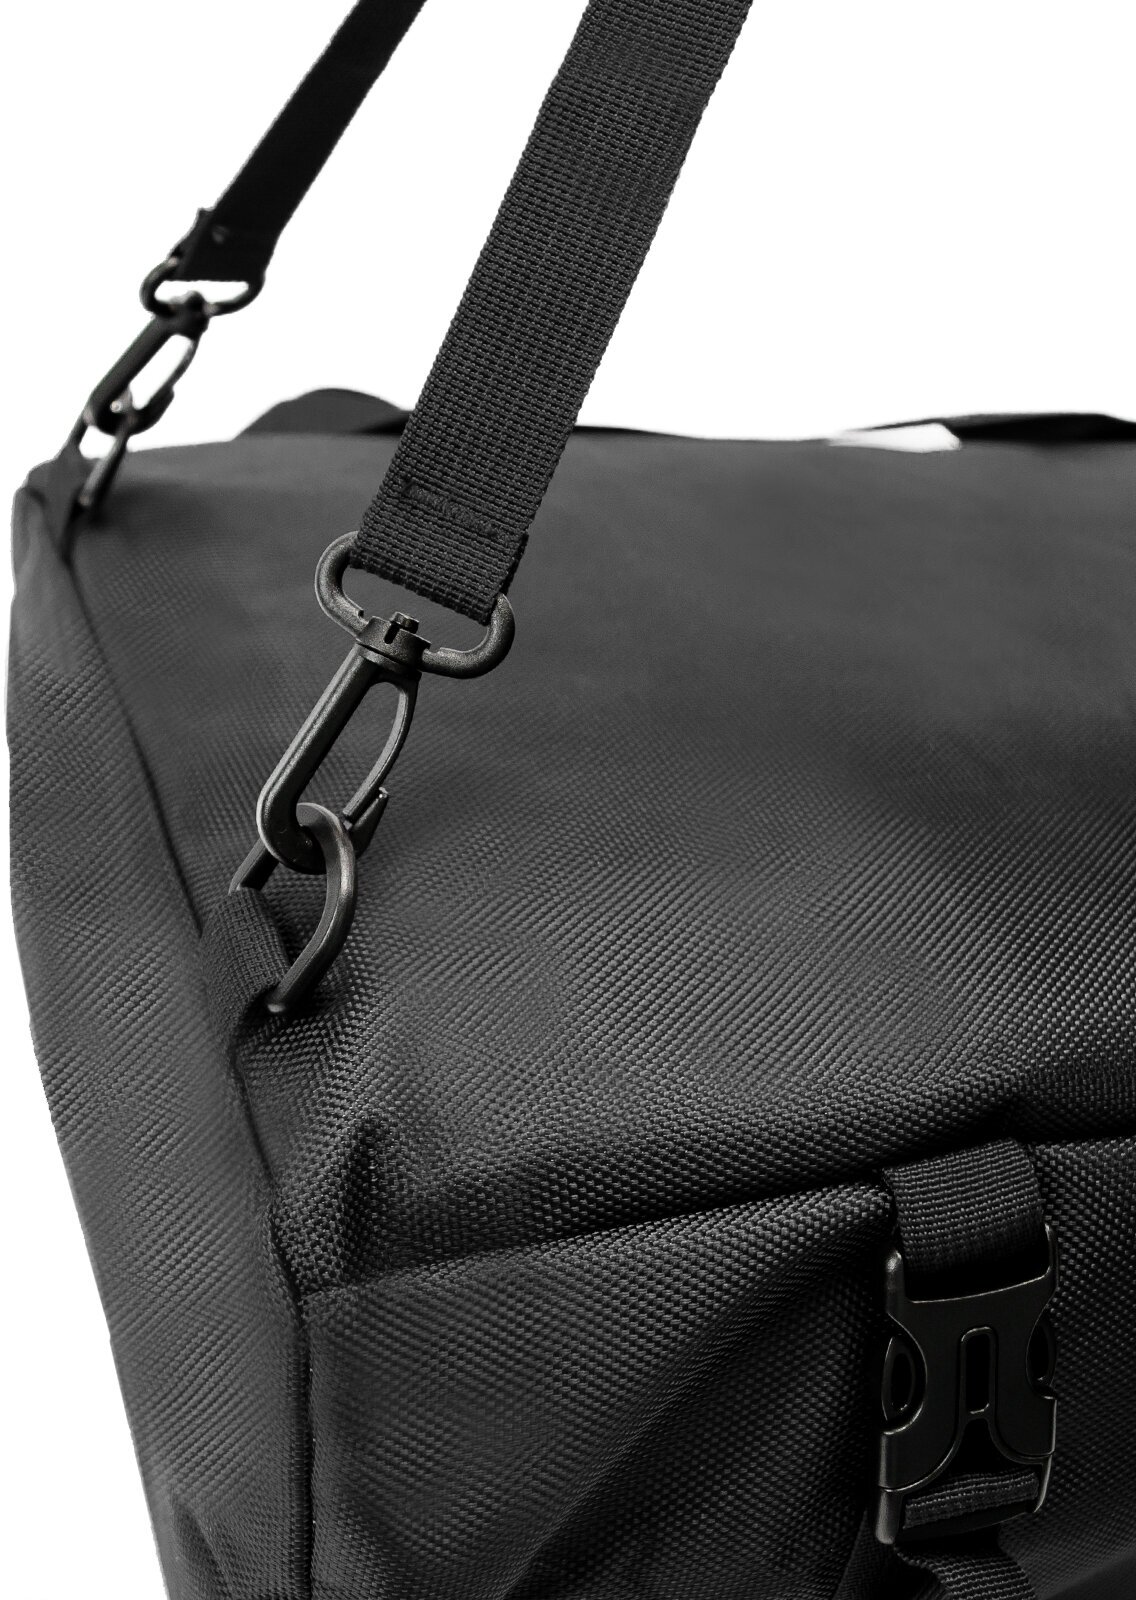 Рюкзак-спортивная сумка (22,5 л, черная) UrbanStorm трансформер большой размер для фитнеса, отдыха \ школьный для мальчиков, девочек - фотография № 8